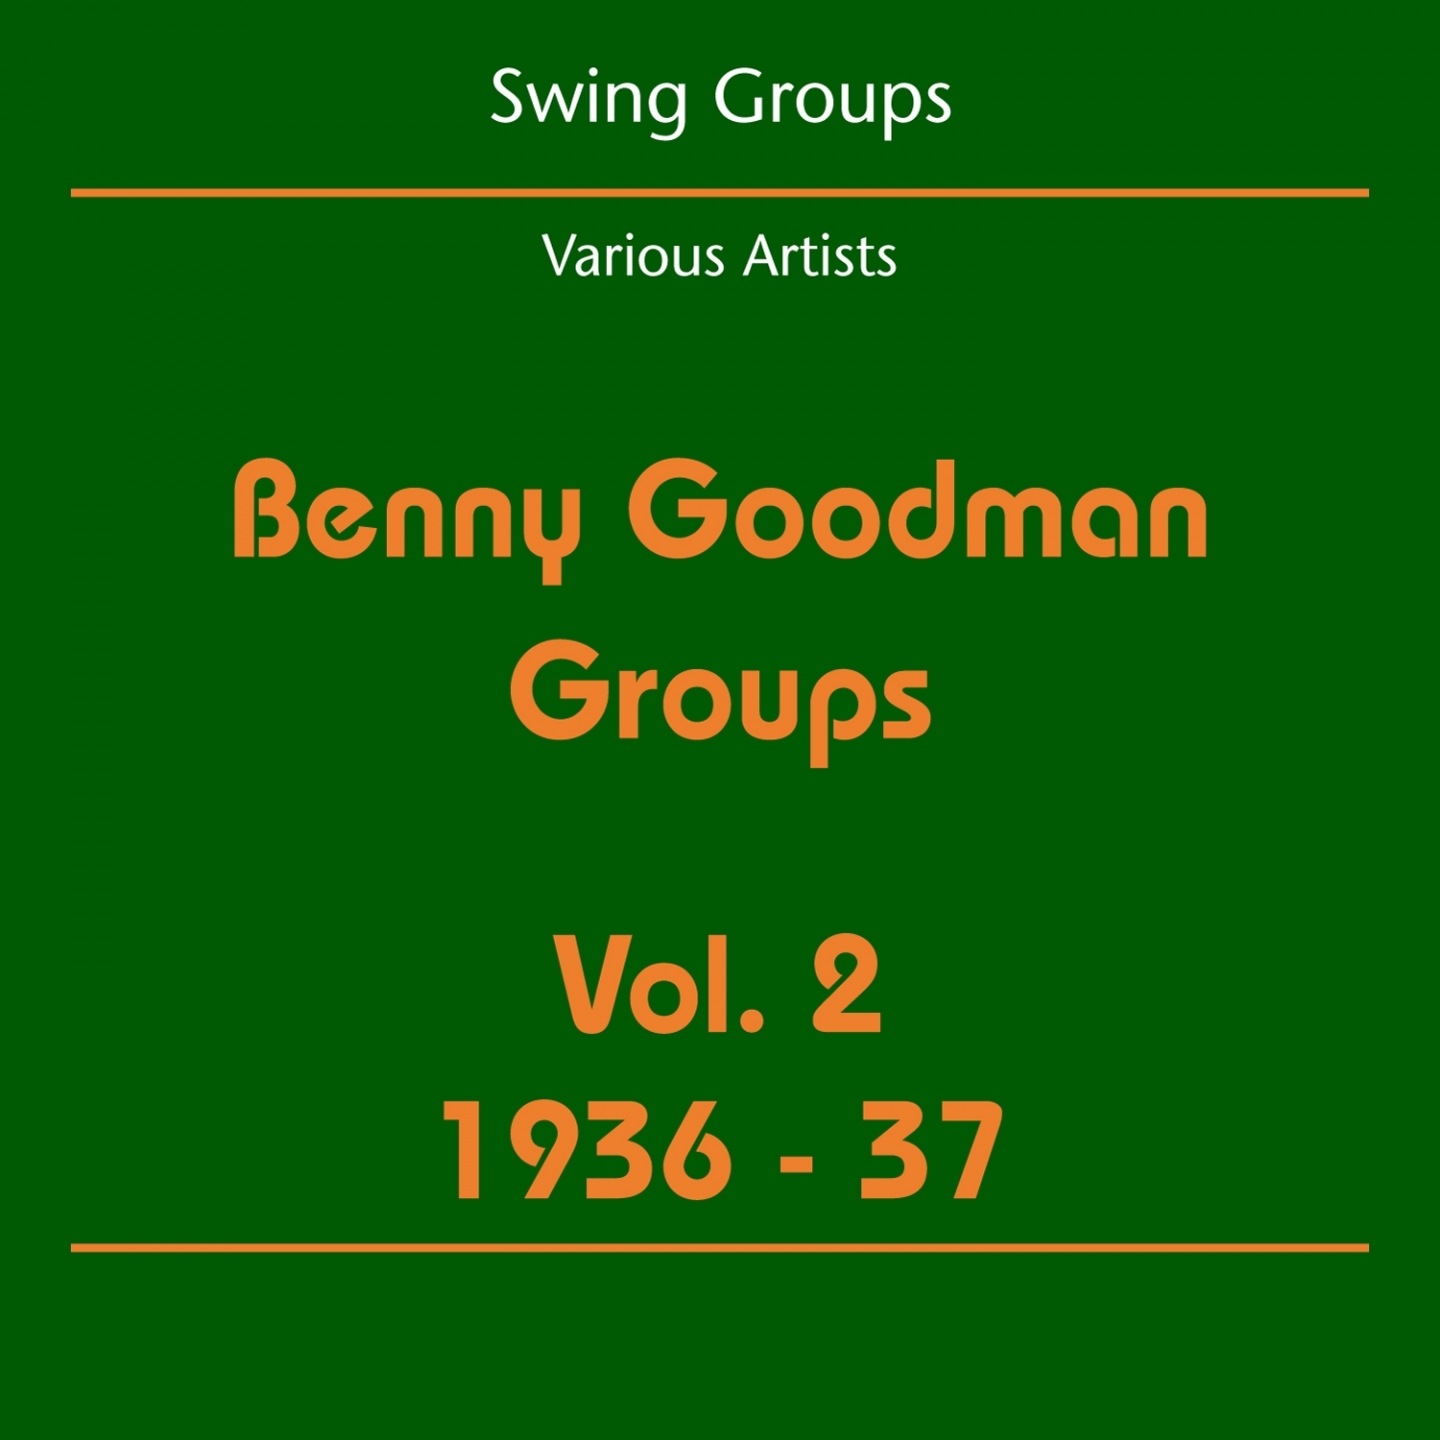 Swing Groups (Benny Goodman Groups Volume 2 1936-37)